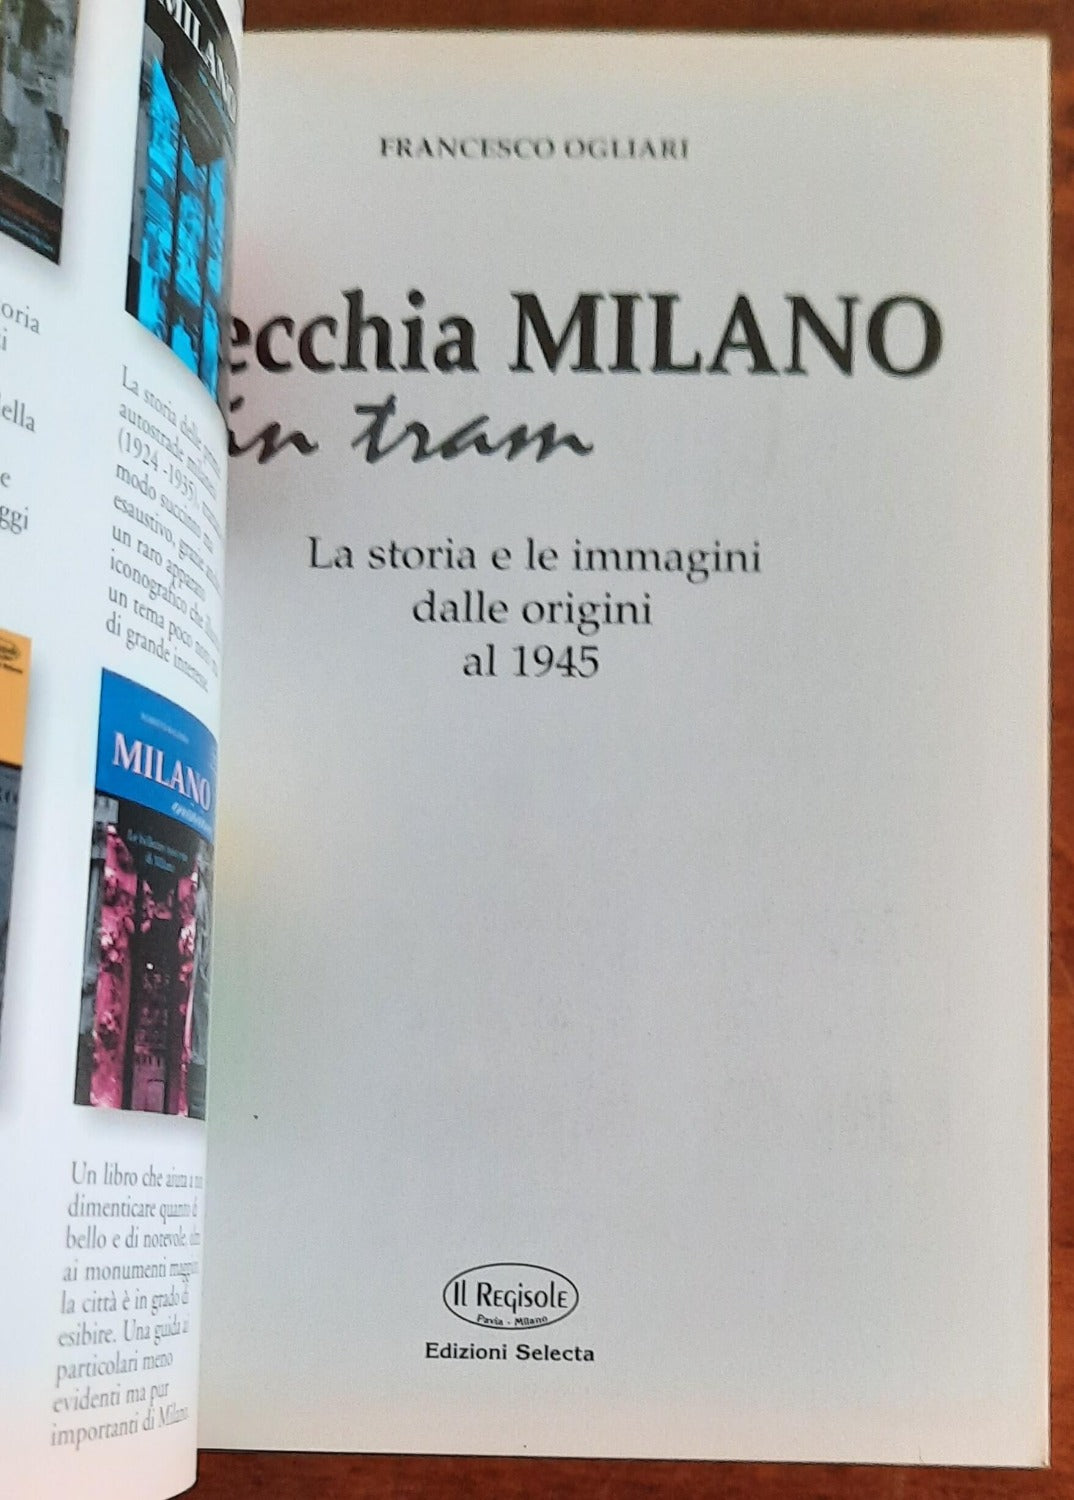 Vecchia Milano in tram. La storia e le immagini dalle origini al 1945